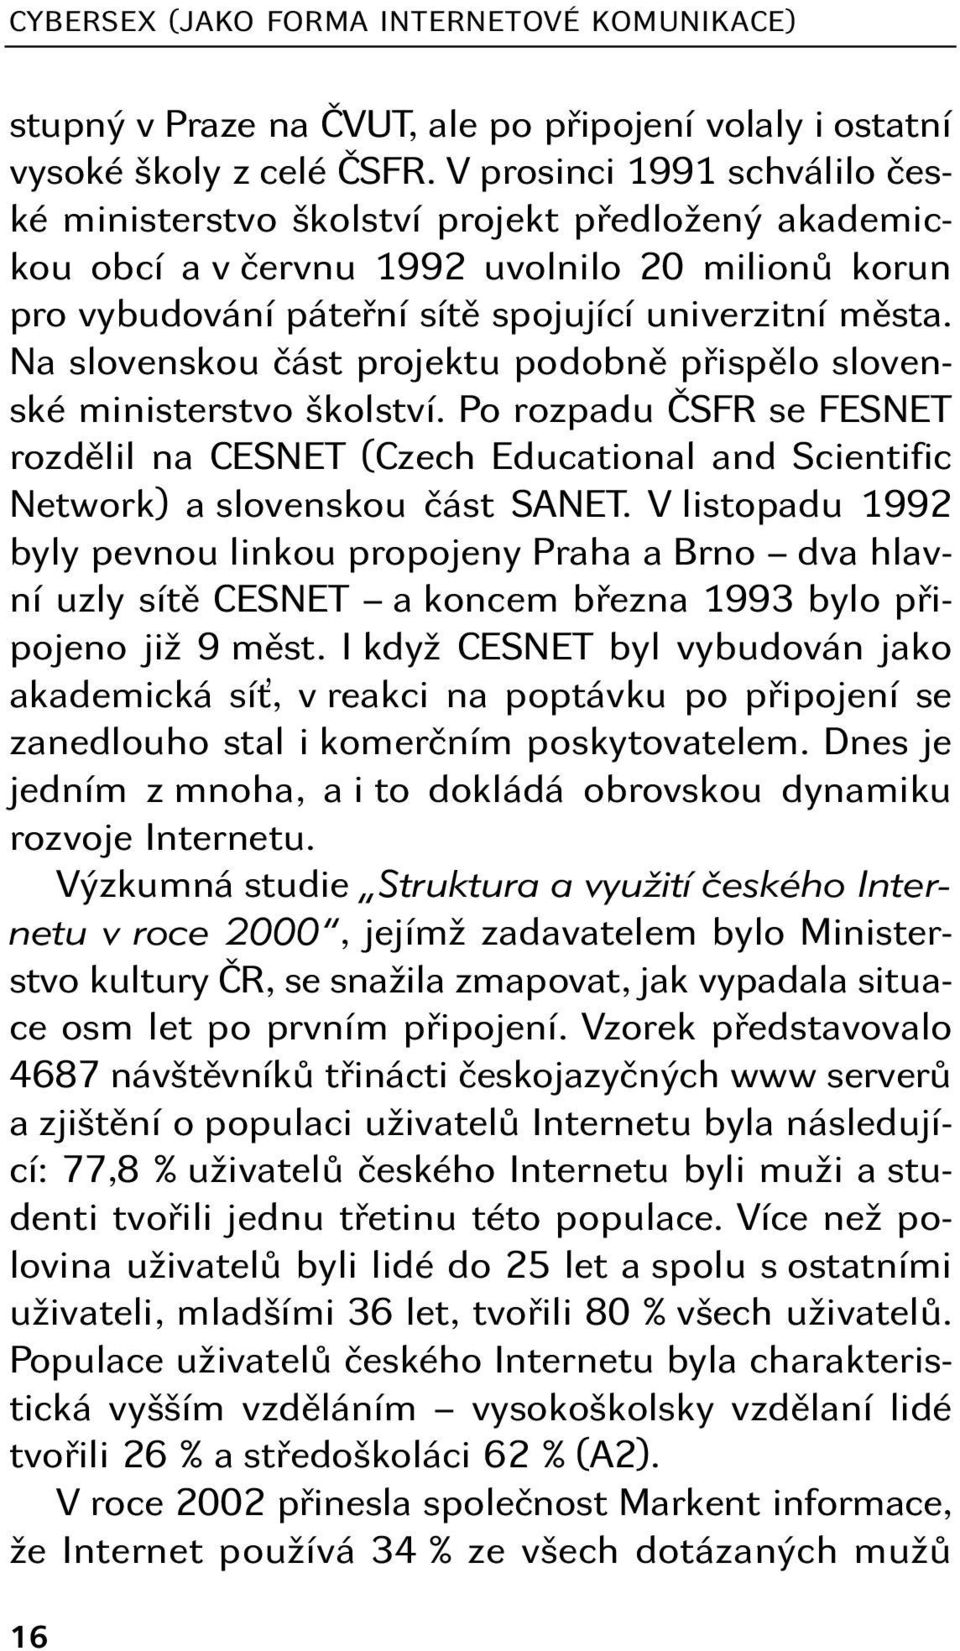 Na slovenskou část projektu podobně přispělo slovenské ministerstvo školství. Po rozpadu ČSFR se FESNET rozdělil na CESNET (Czech Educational and Scientific Network) a slovenskou část SANET.